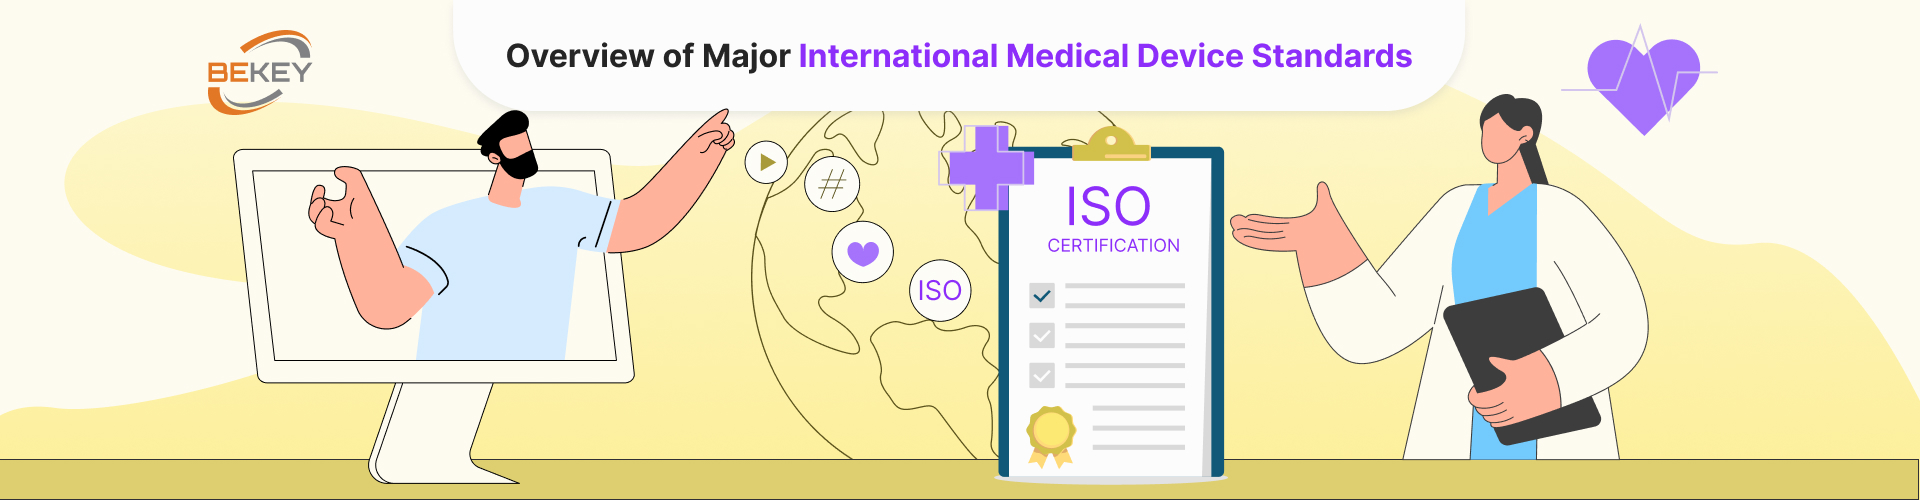 Overview of Major International Medical Device Standards - image